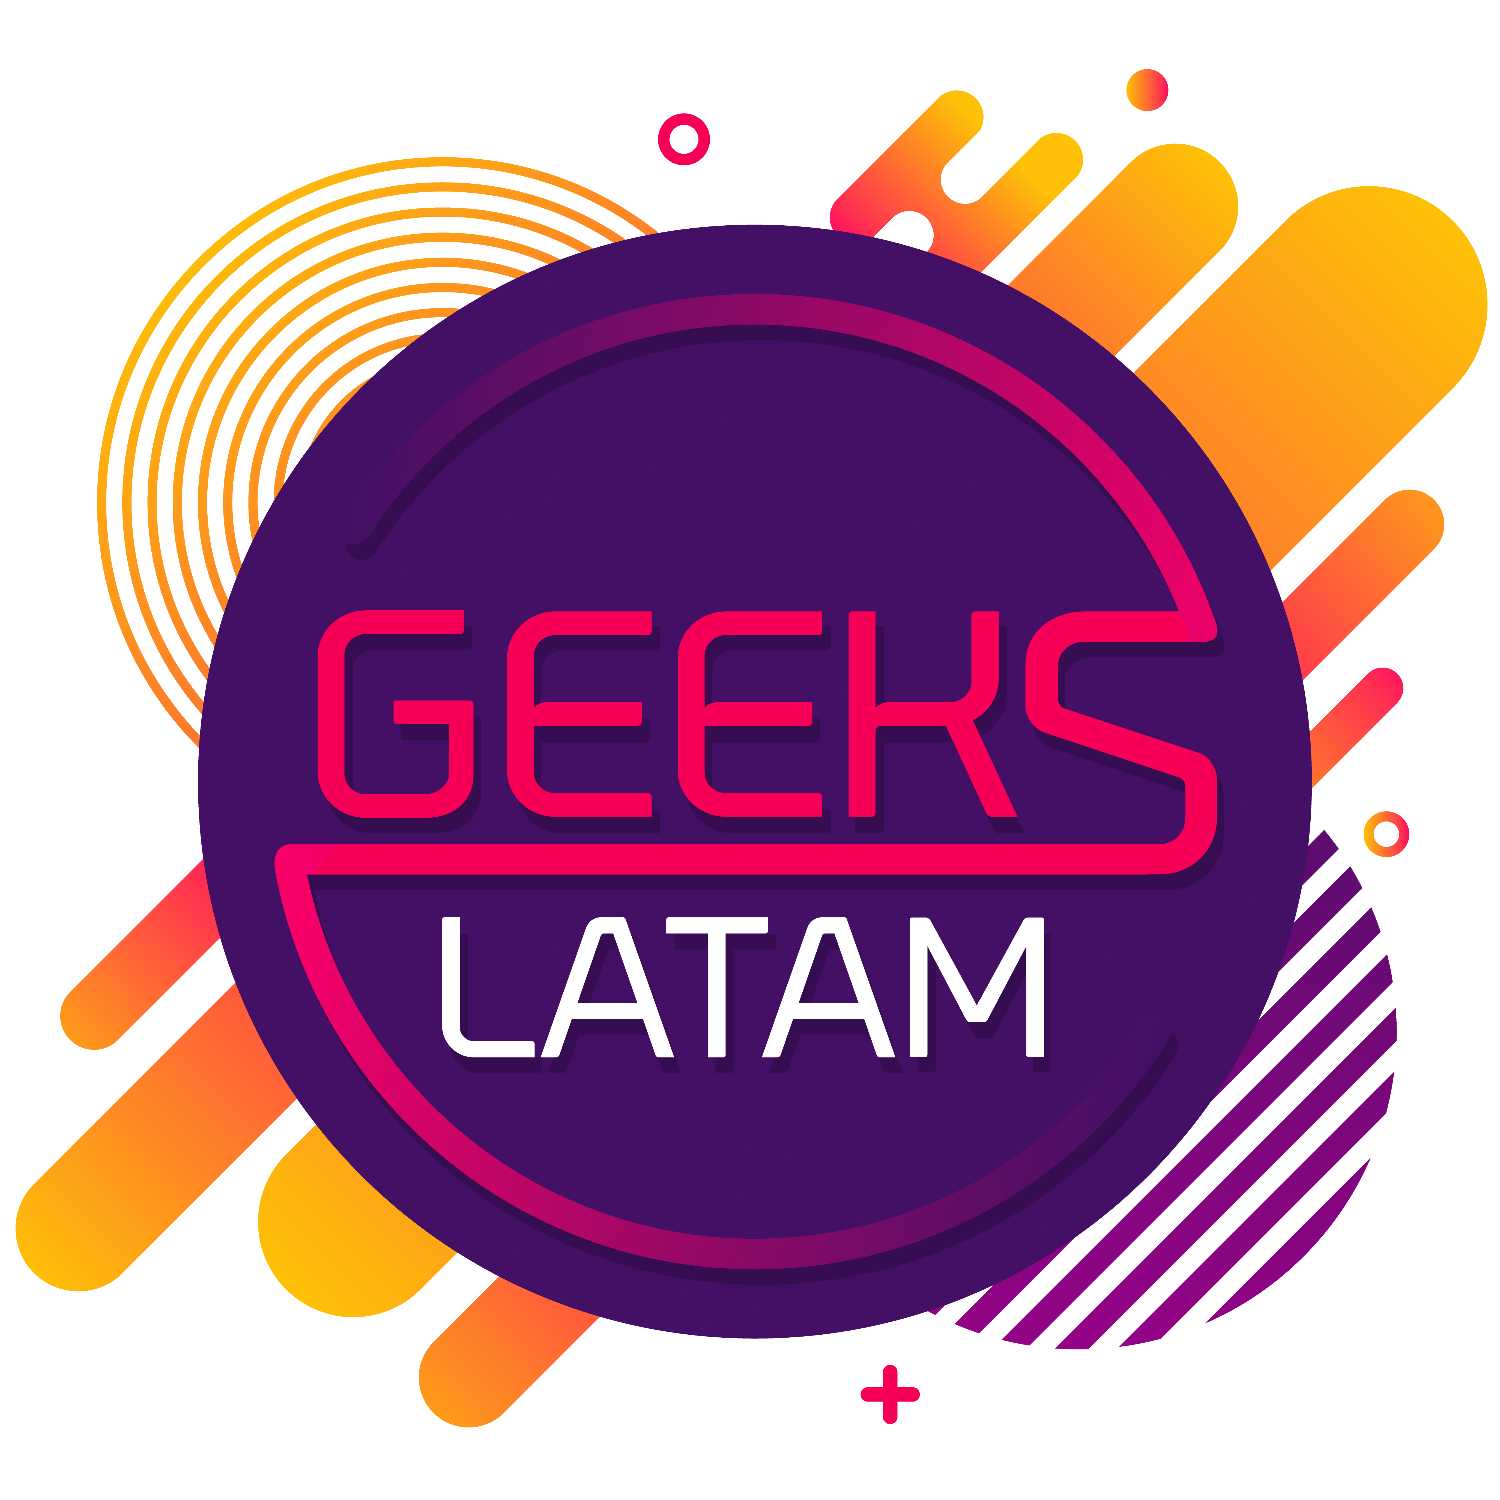 Geeks Latam